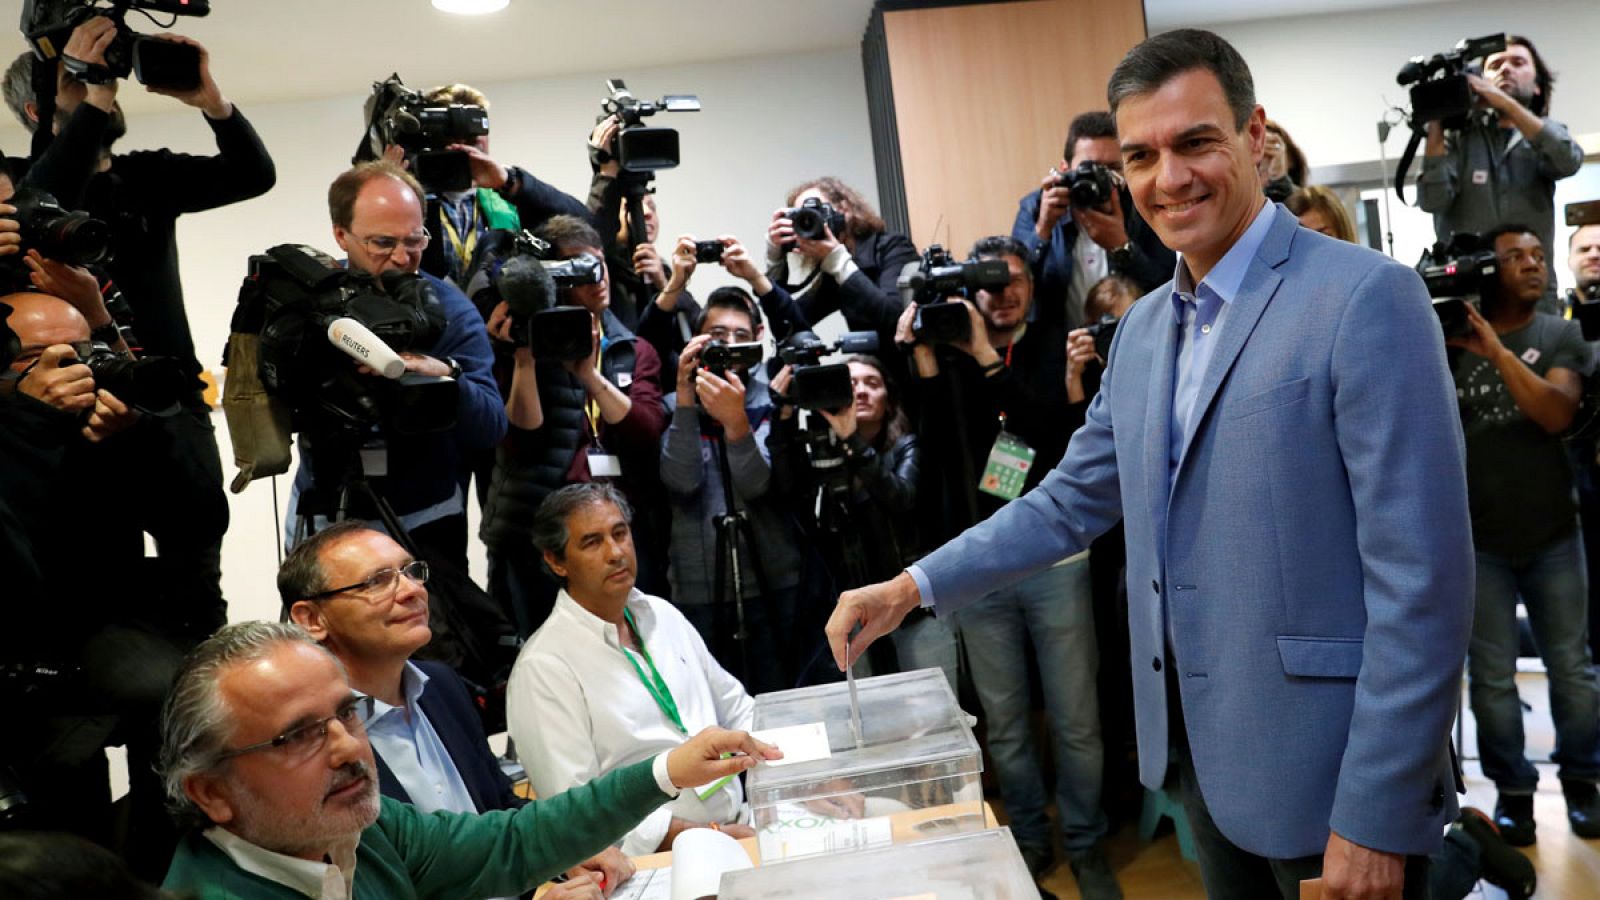 Elecciones generales 2019 | Sánchez pide "una mayoría amplia para un Gobierno estable"